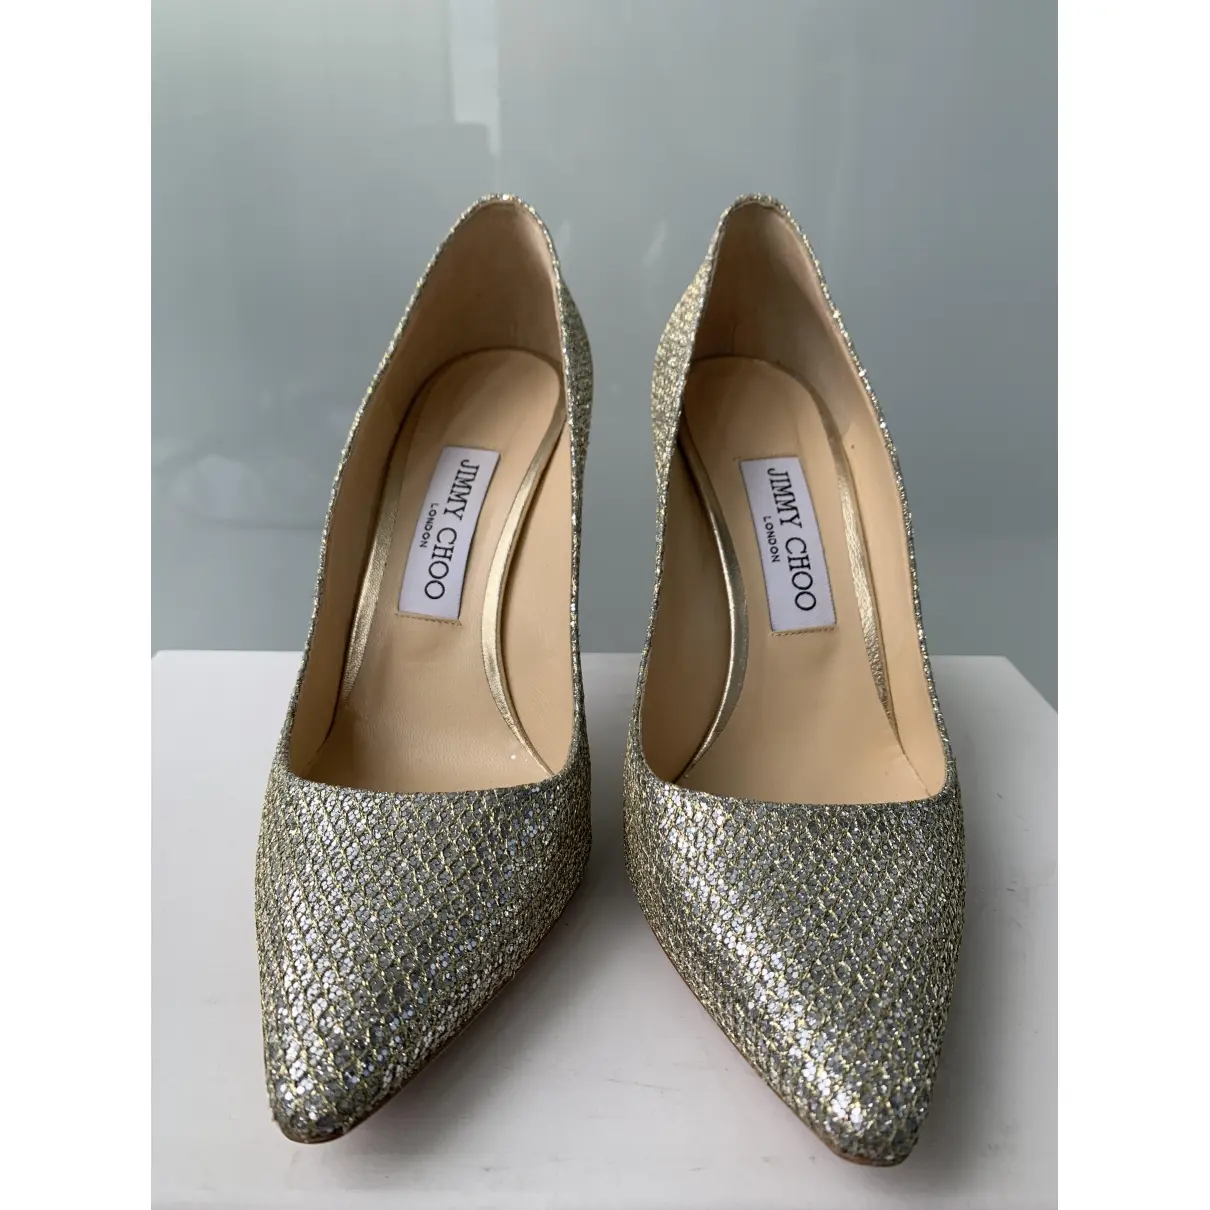 Buy Jimmy Choo Anouk glitter heels online